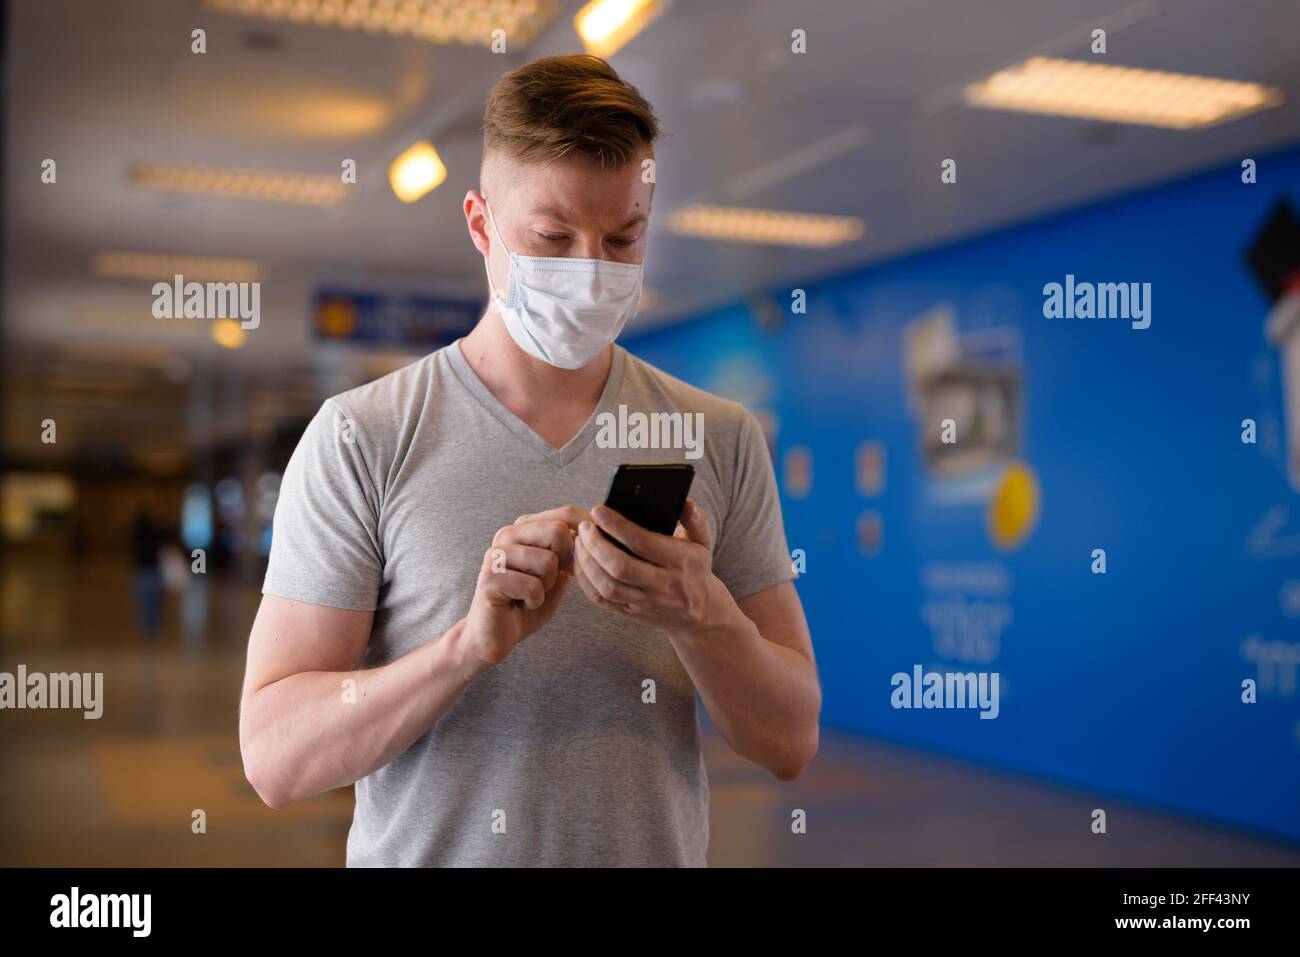 Uomo turistico che indossa maschera per la protezione contro il coronavirus Covid-19 mentre si utilizza un telefono cellulare Foto Stock